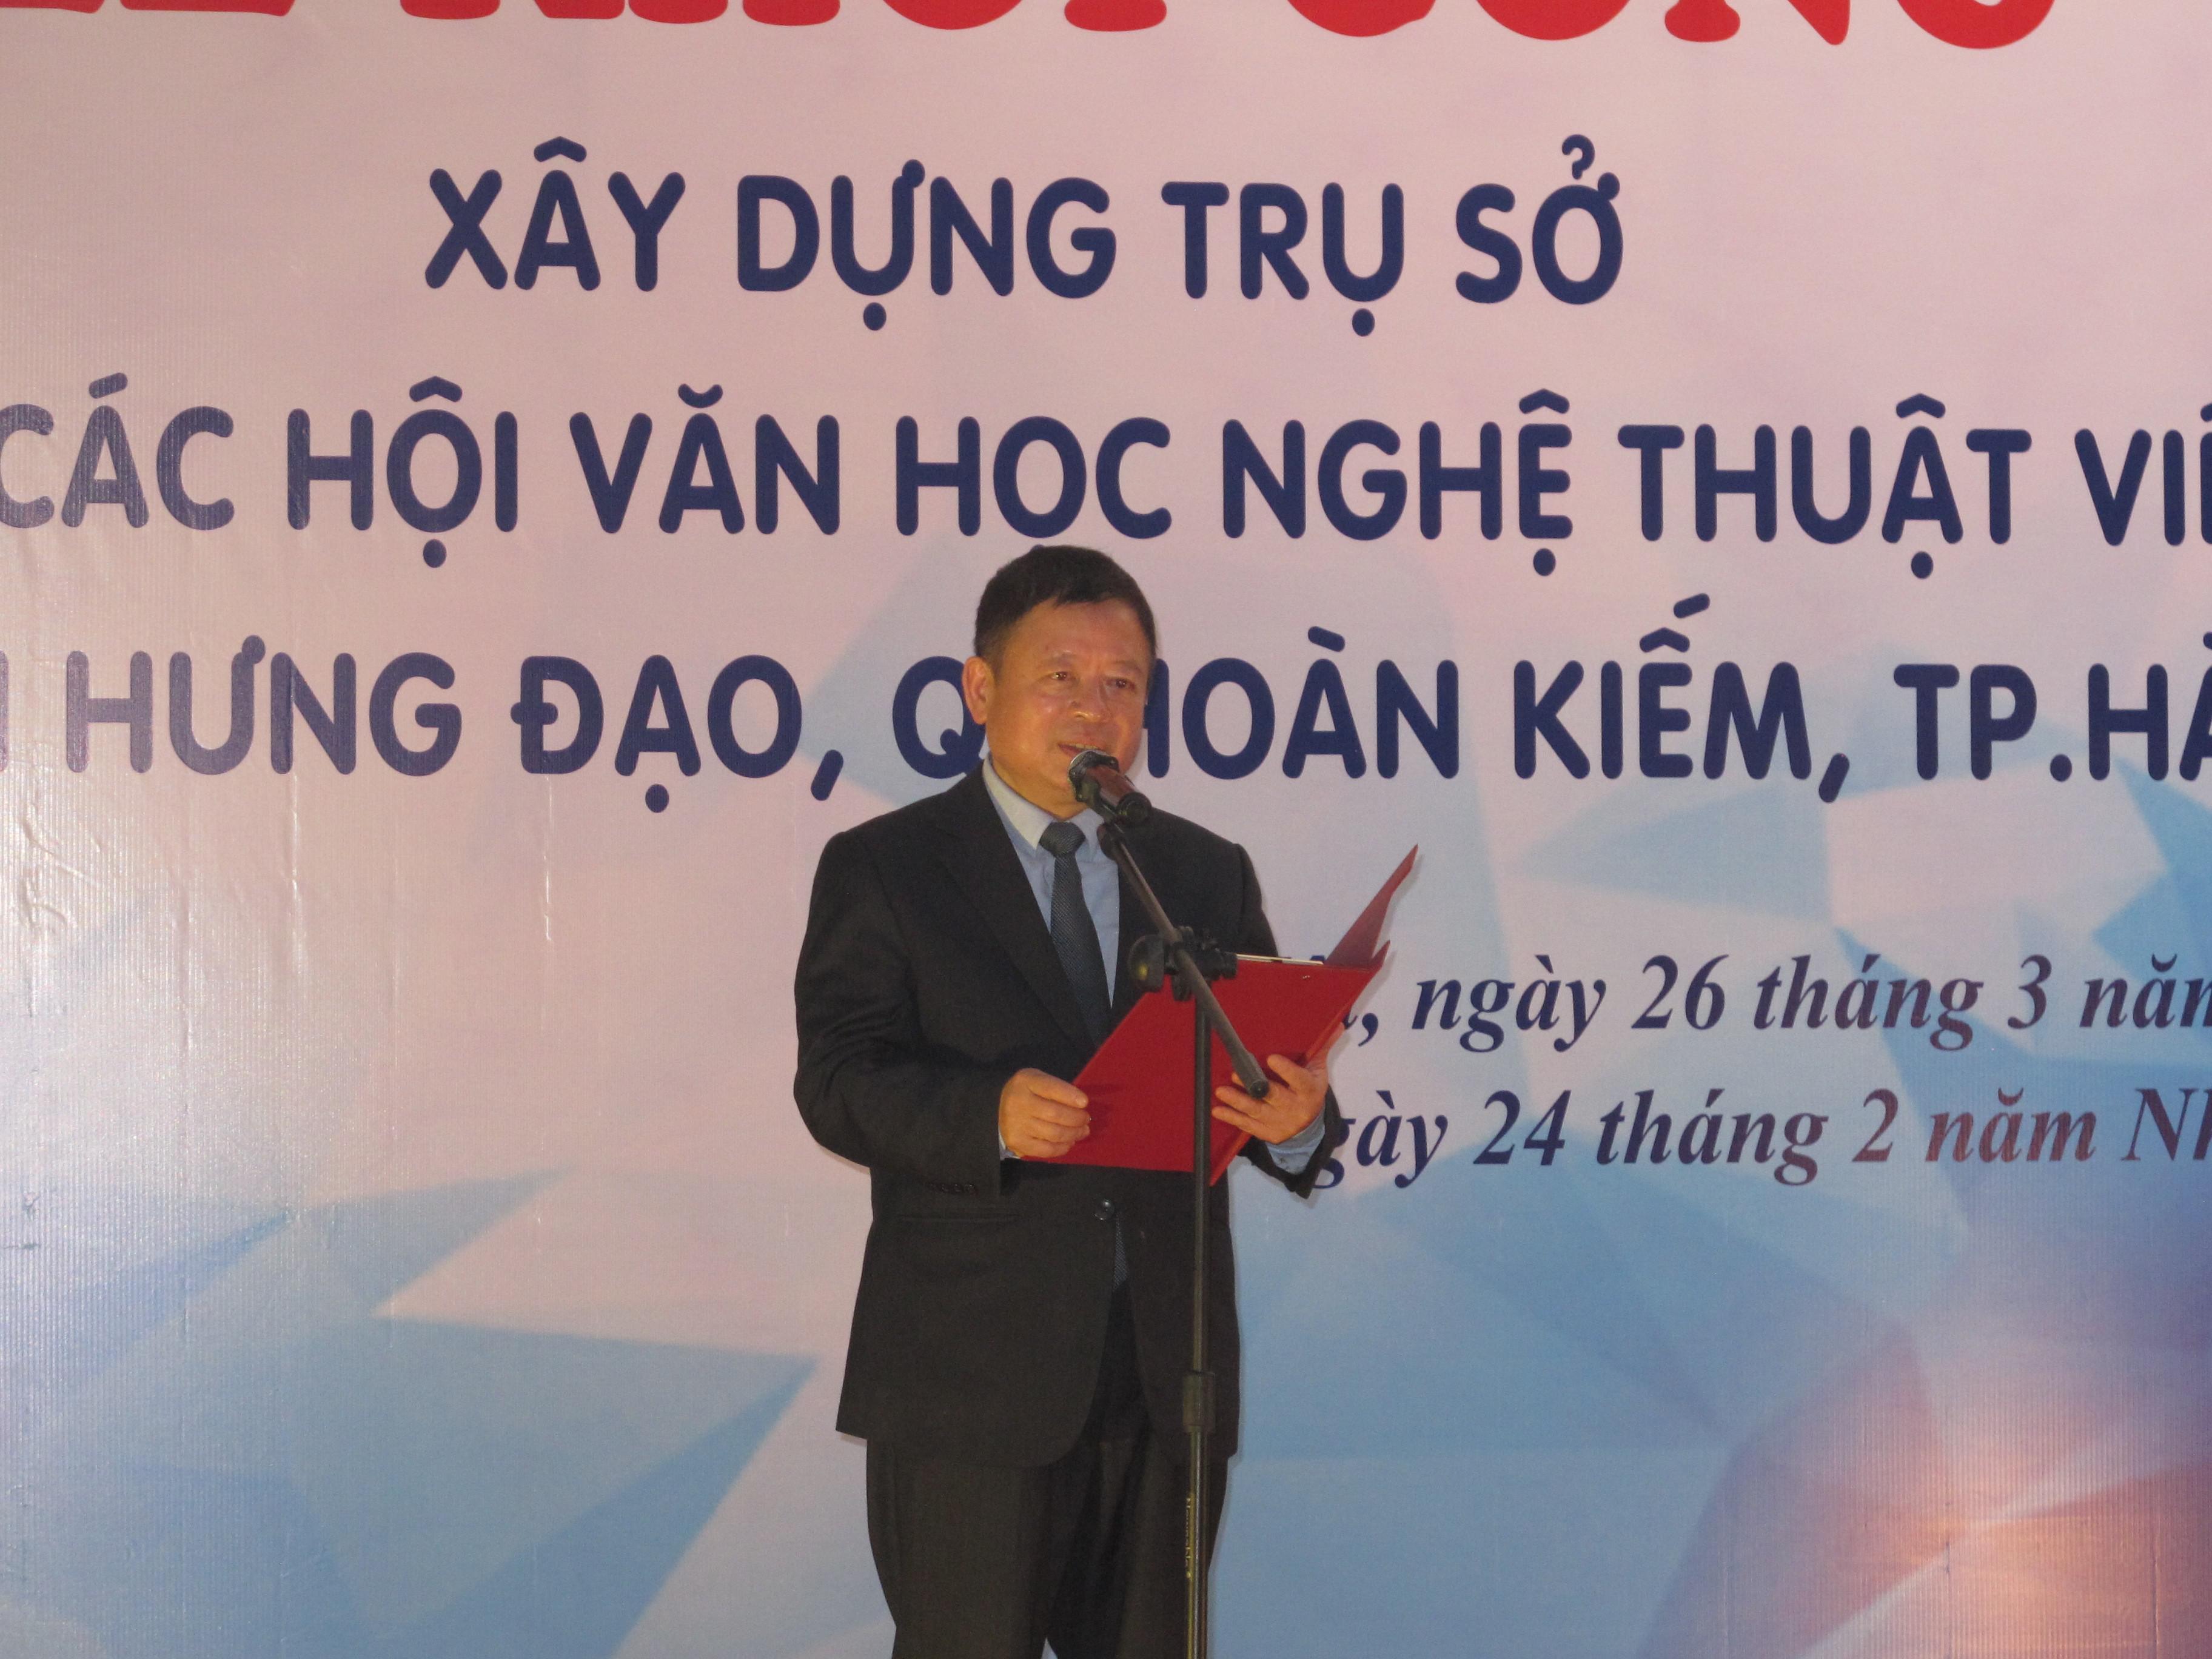 Lễ khởi công xây dựng Trụ sở Liên hiệp các Hội Văn học nghệ thuật Việt Nam - 1